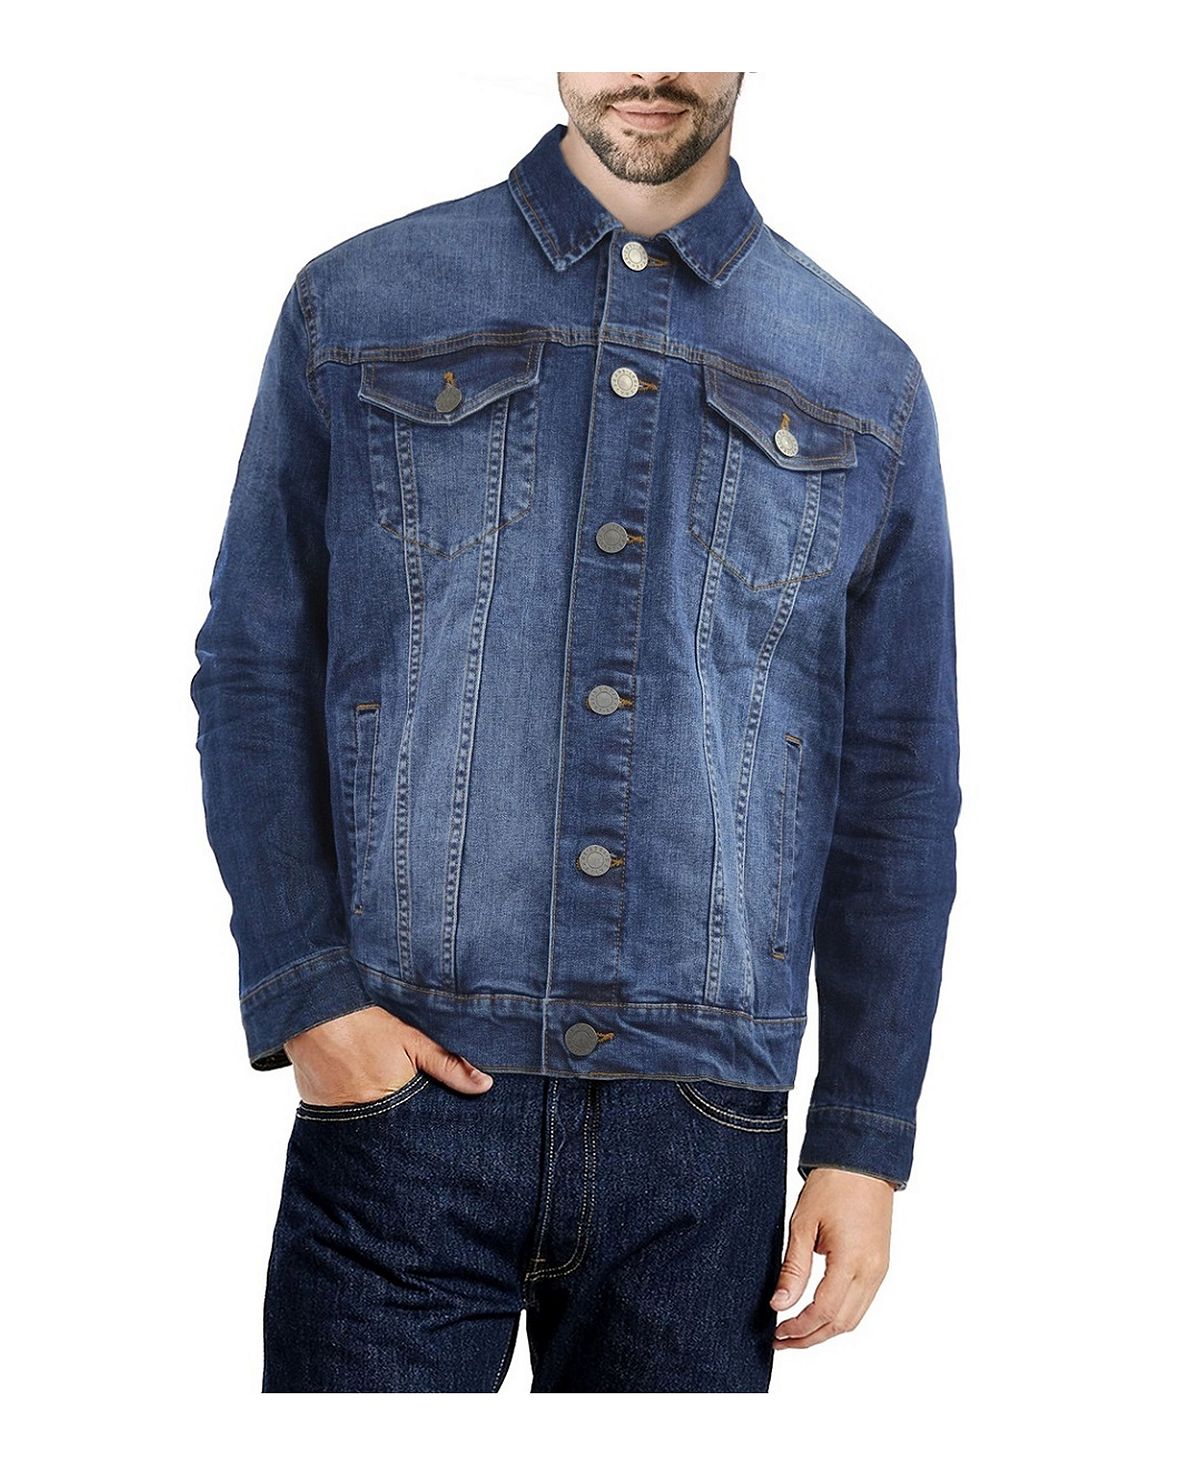 Мужская приталенная джинсовая куртка с эффектом потертости X-Ray новая джинсовая куртка мужская повседневная джинсовая куртка синяя приталенная ветровка весна осень